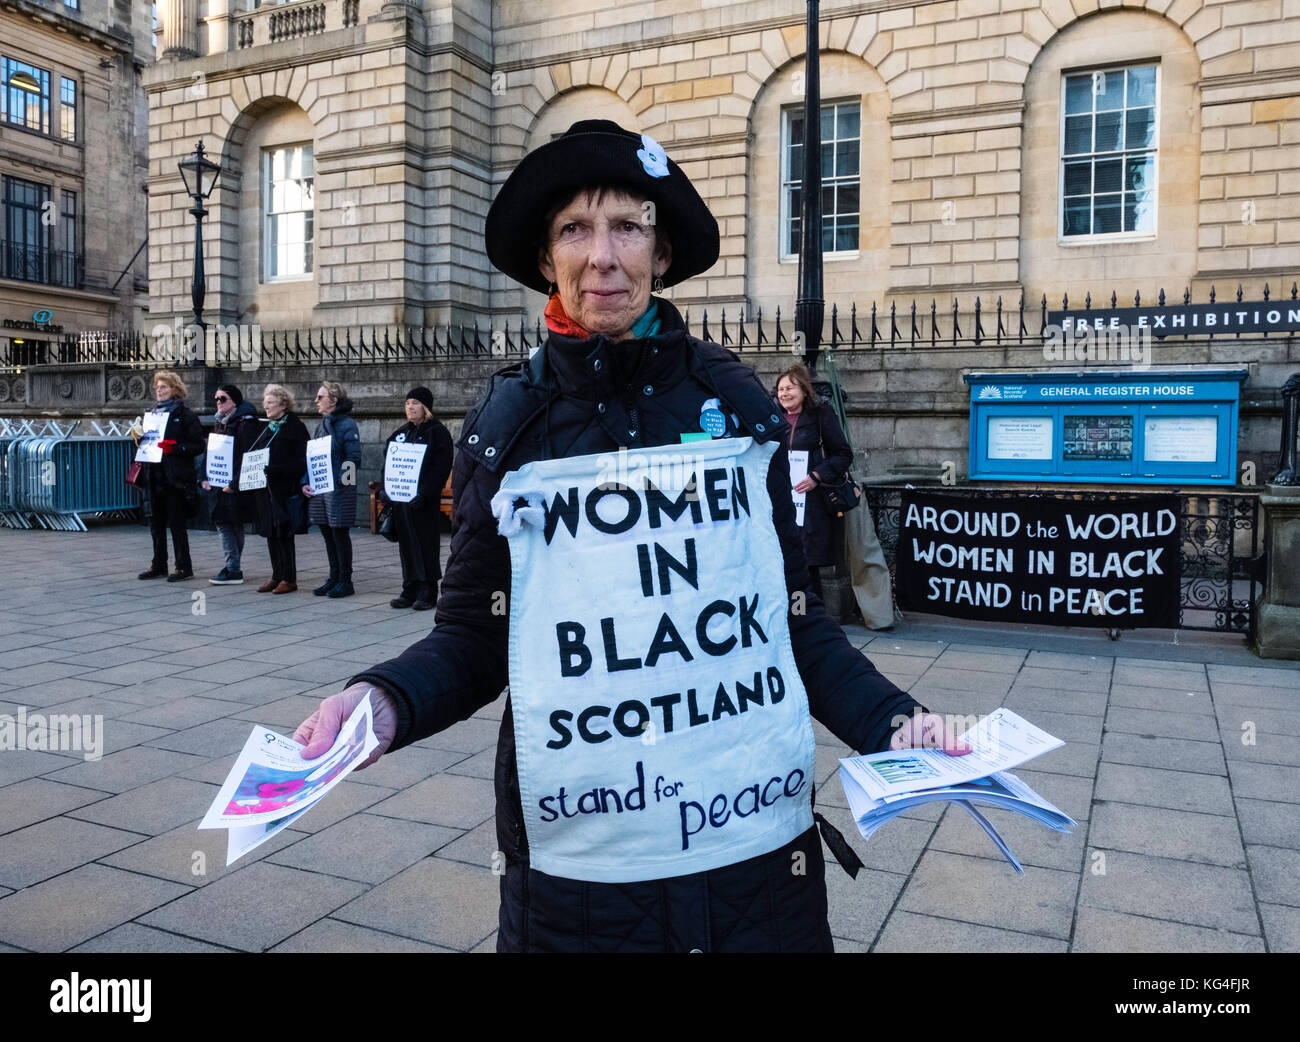 Edinburgh, Schottland, Vereinigtes Königreich. 04 November 2017. Weibliche pazifistische Gruppe Frauen in Schwarz in regelmäßigen stillen Protest gegen Kriege in der Princes Street in Edinburgh. Kredit: Iain Masterton / Alamy Live News Stockfoto